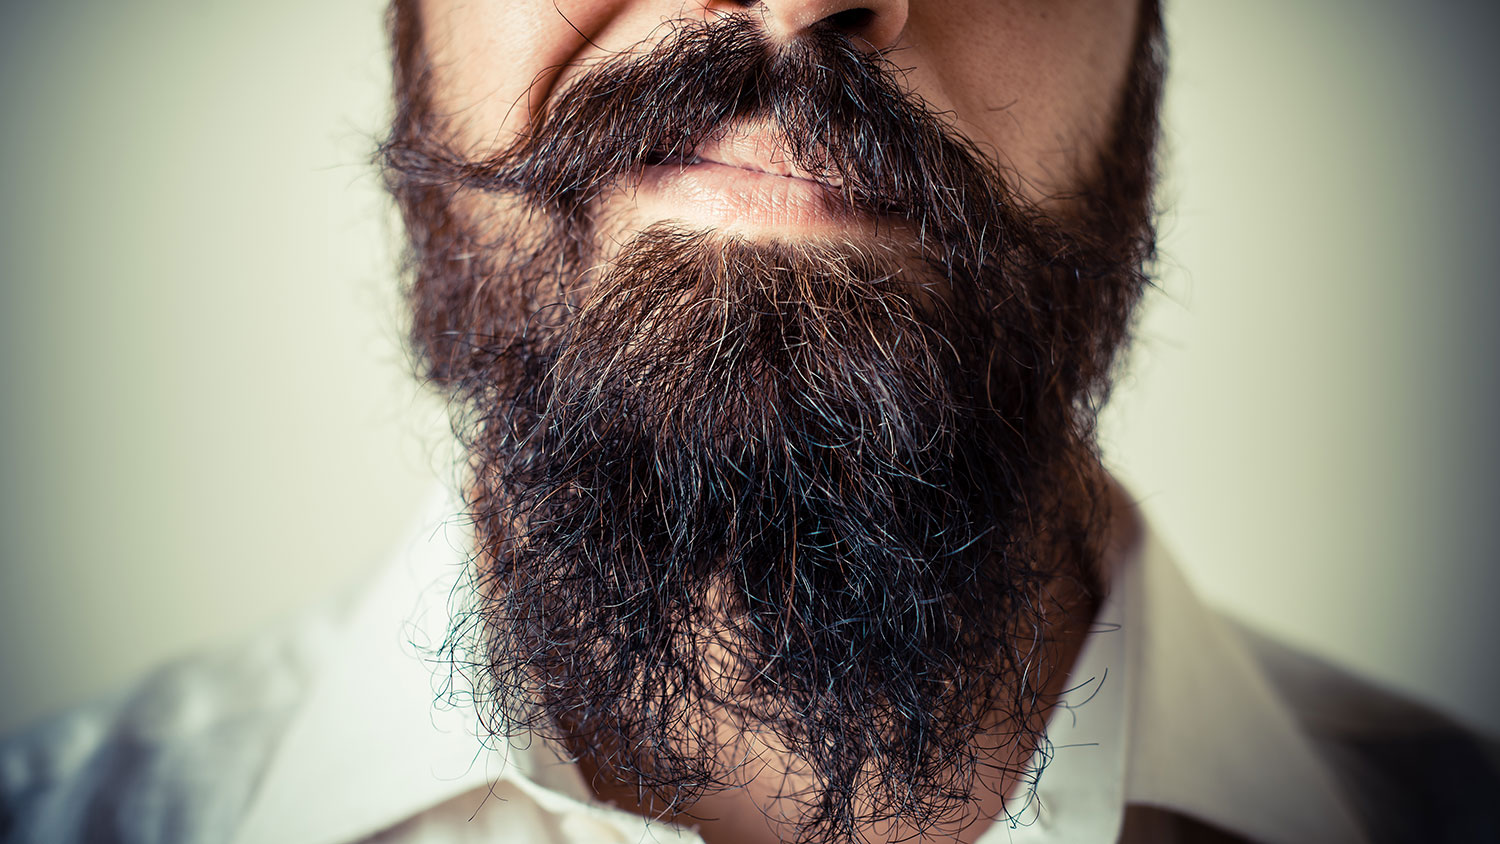 Ношение бороды может вызвать стерлигова